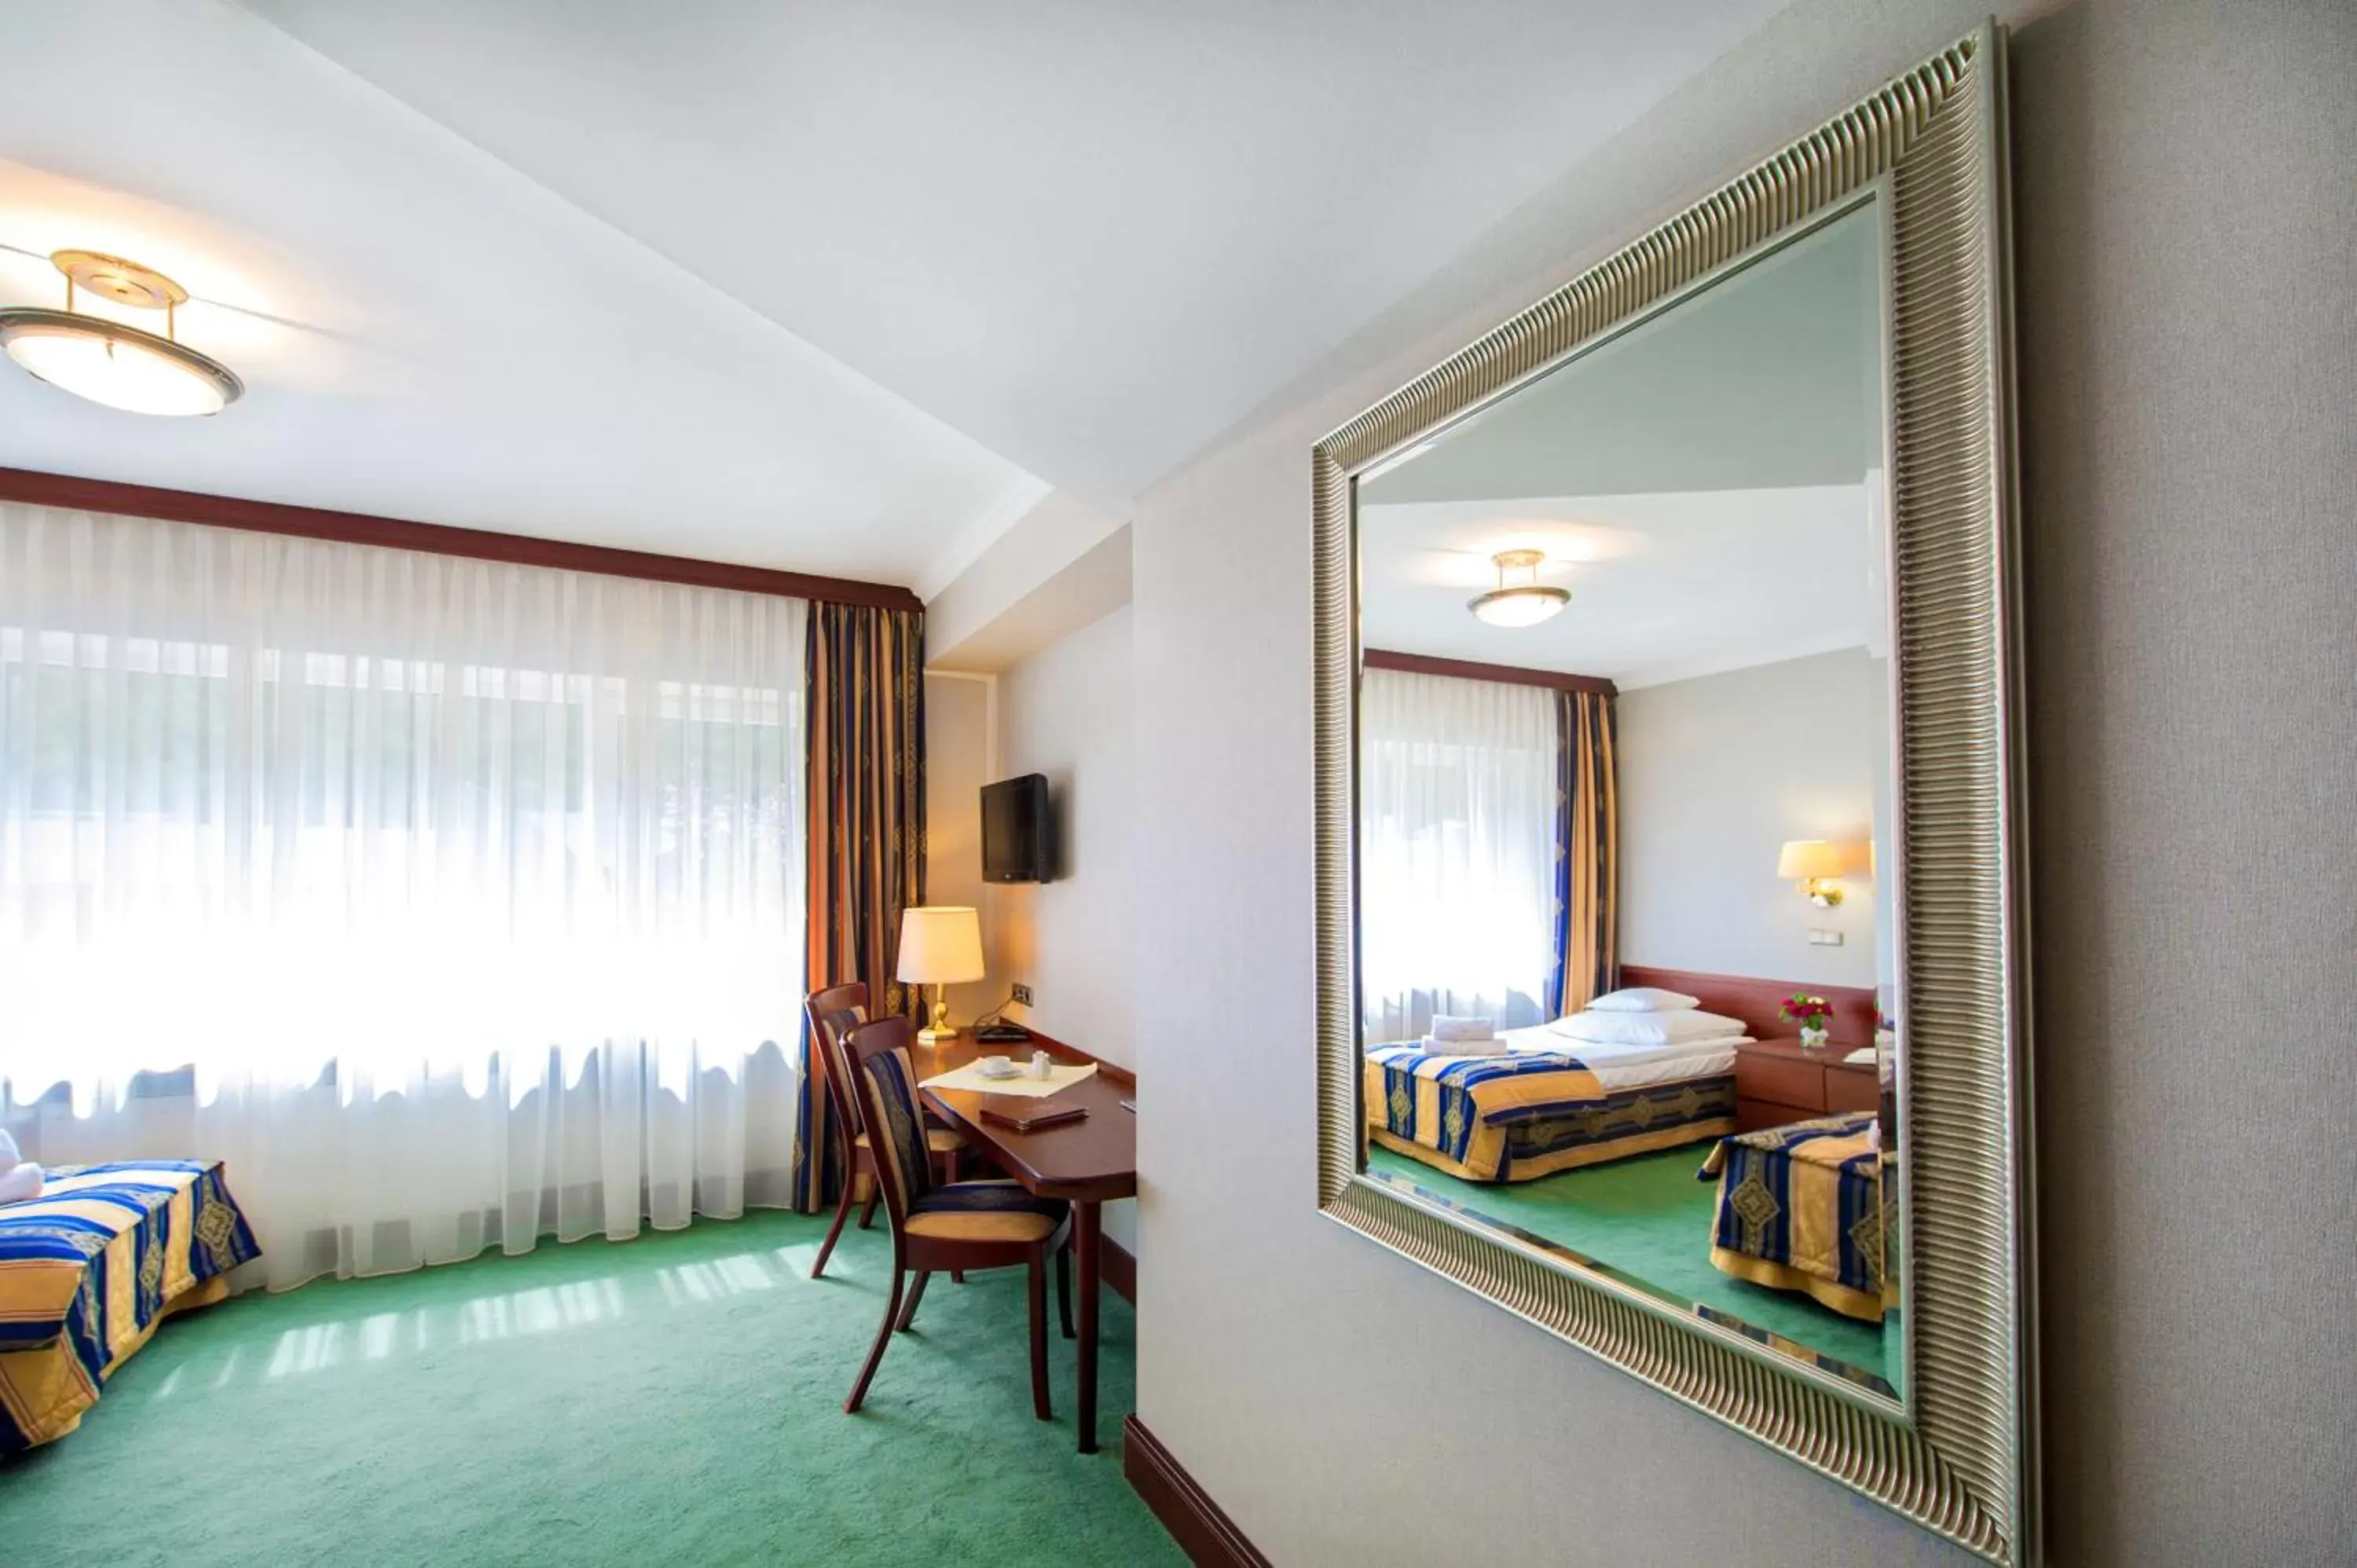 Photo of the whole room in Hotel Villa Eva